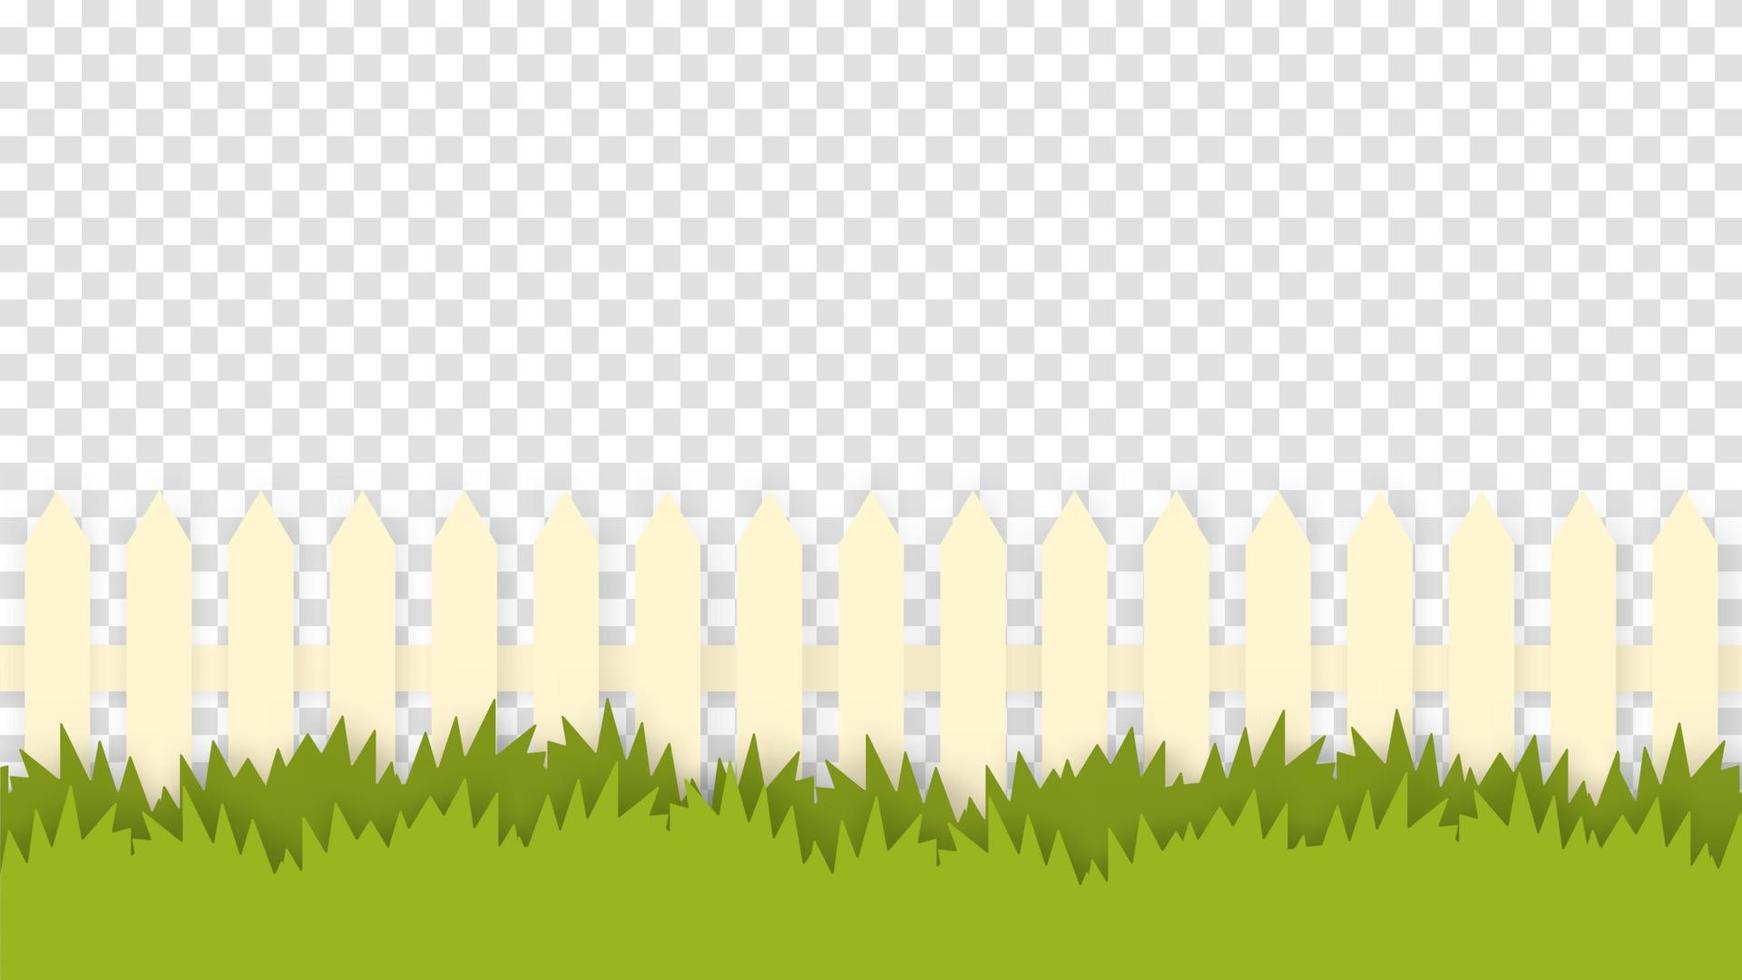 clôture rustique en modèle isolé d'herbe verte. clôture en bois peinte en blanc noyée dans des buissons denses et des mauvaises herbes paysage d'été confortable vecteur de la vie rurale